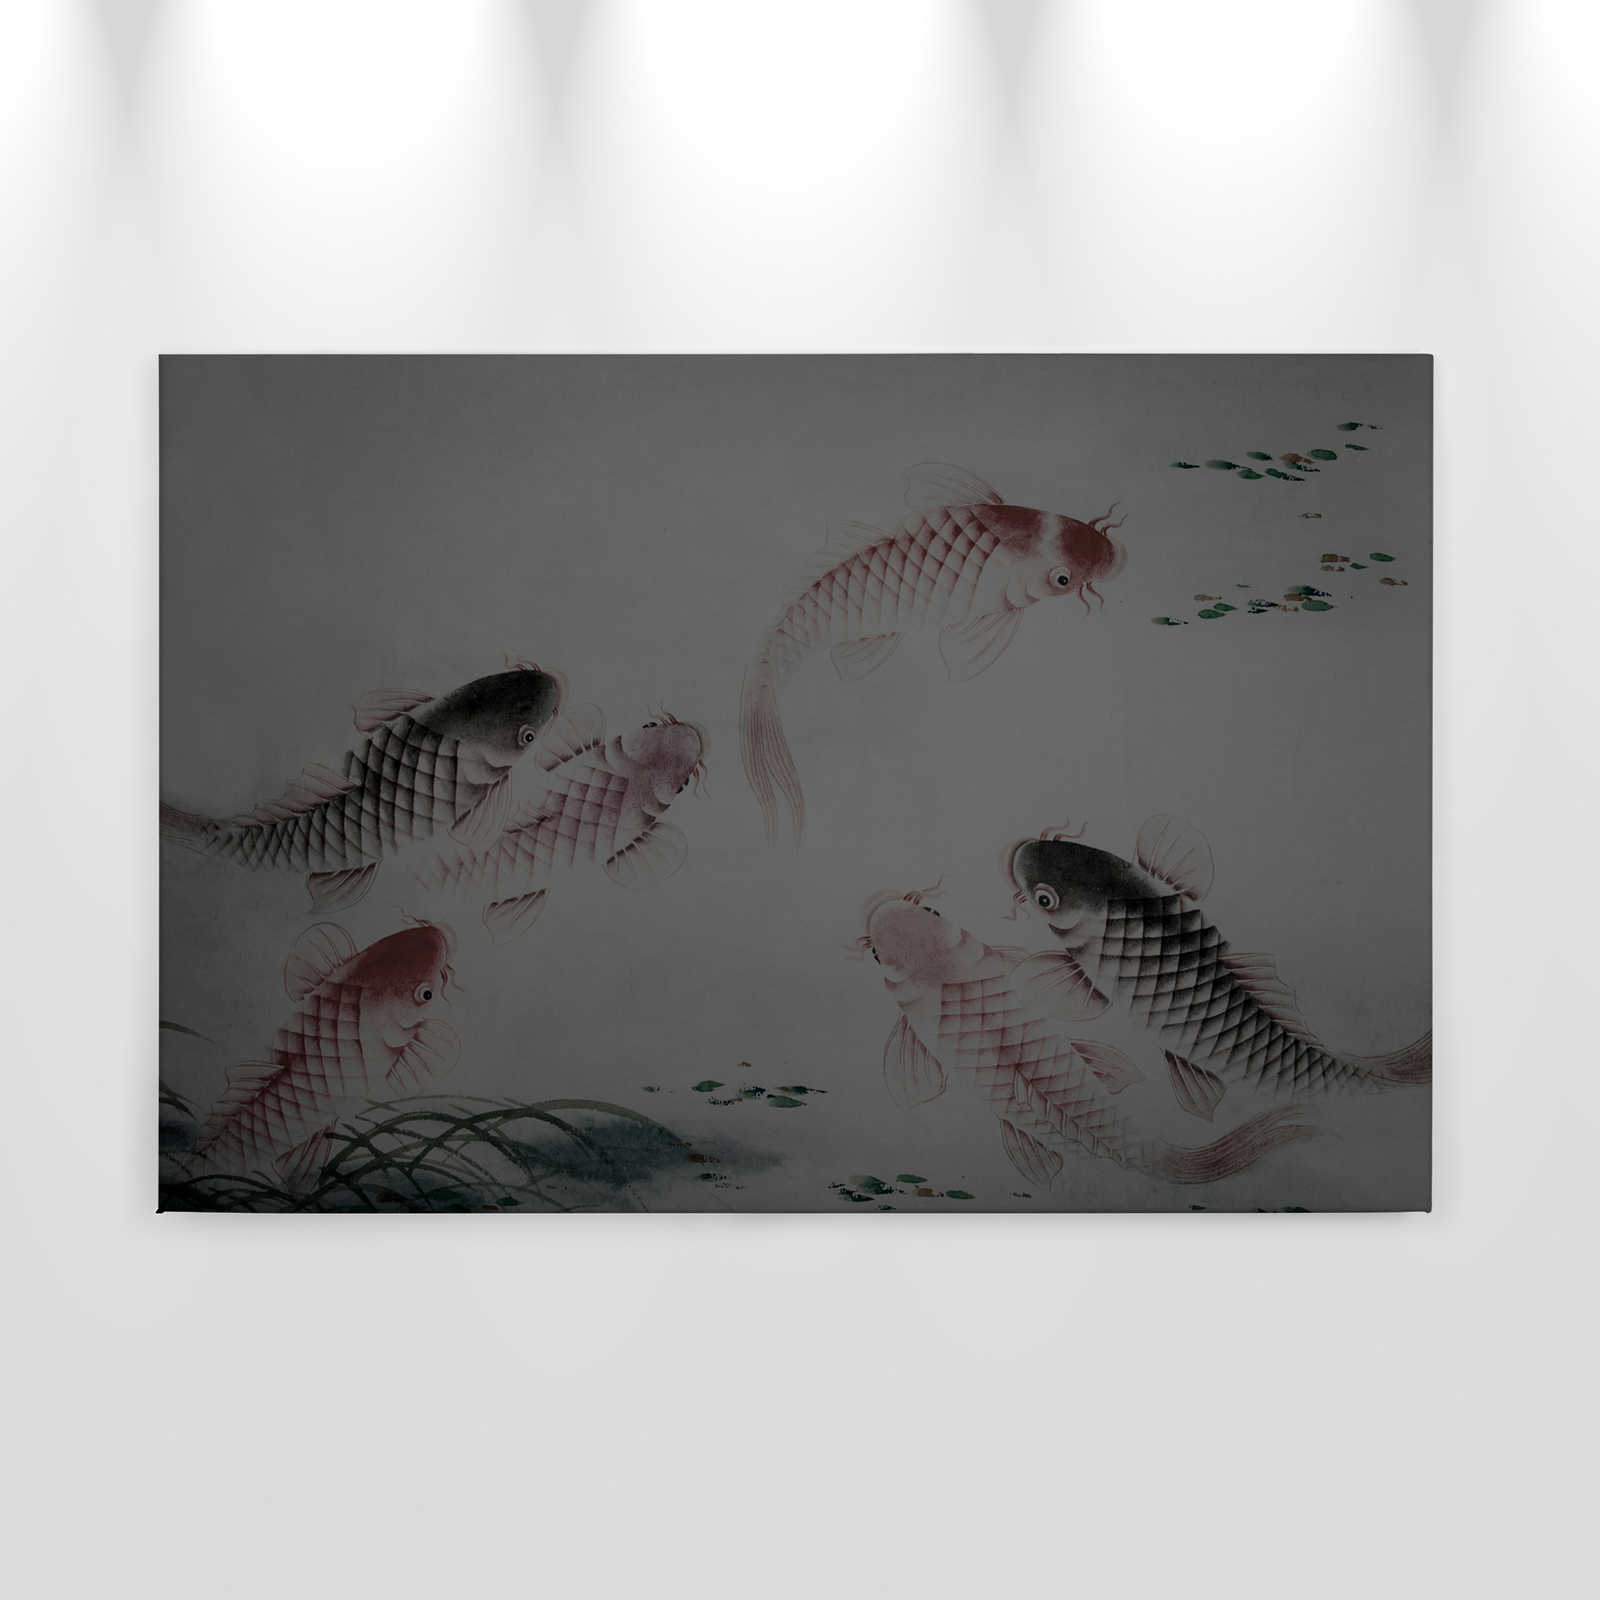             Leinwandbild Asia Style mit Koi-Teich | grau – 0,90 m x 0,60 m
        